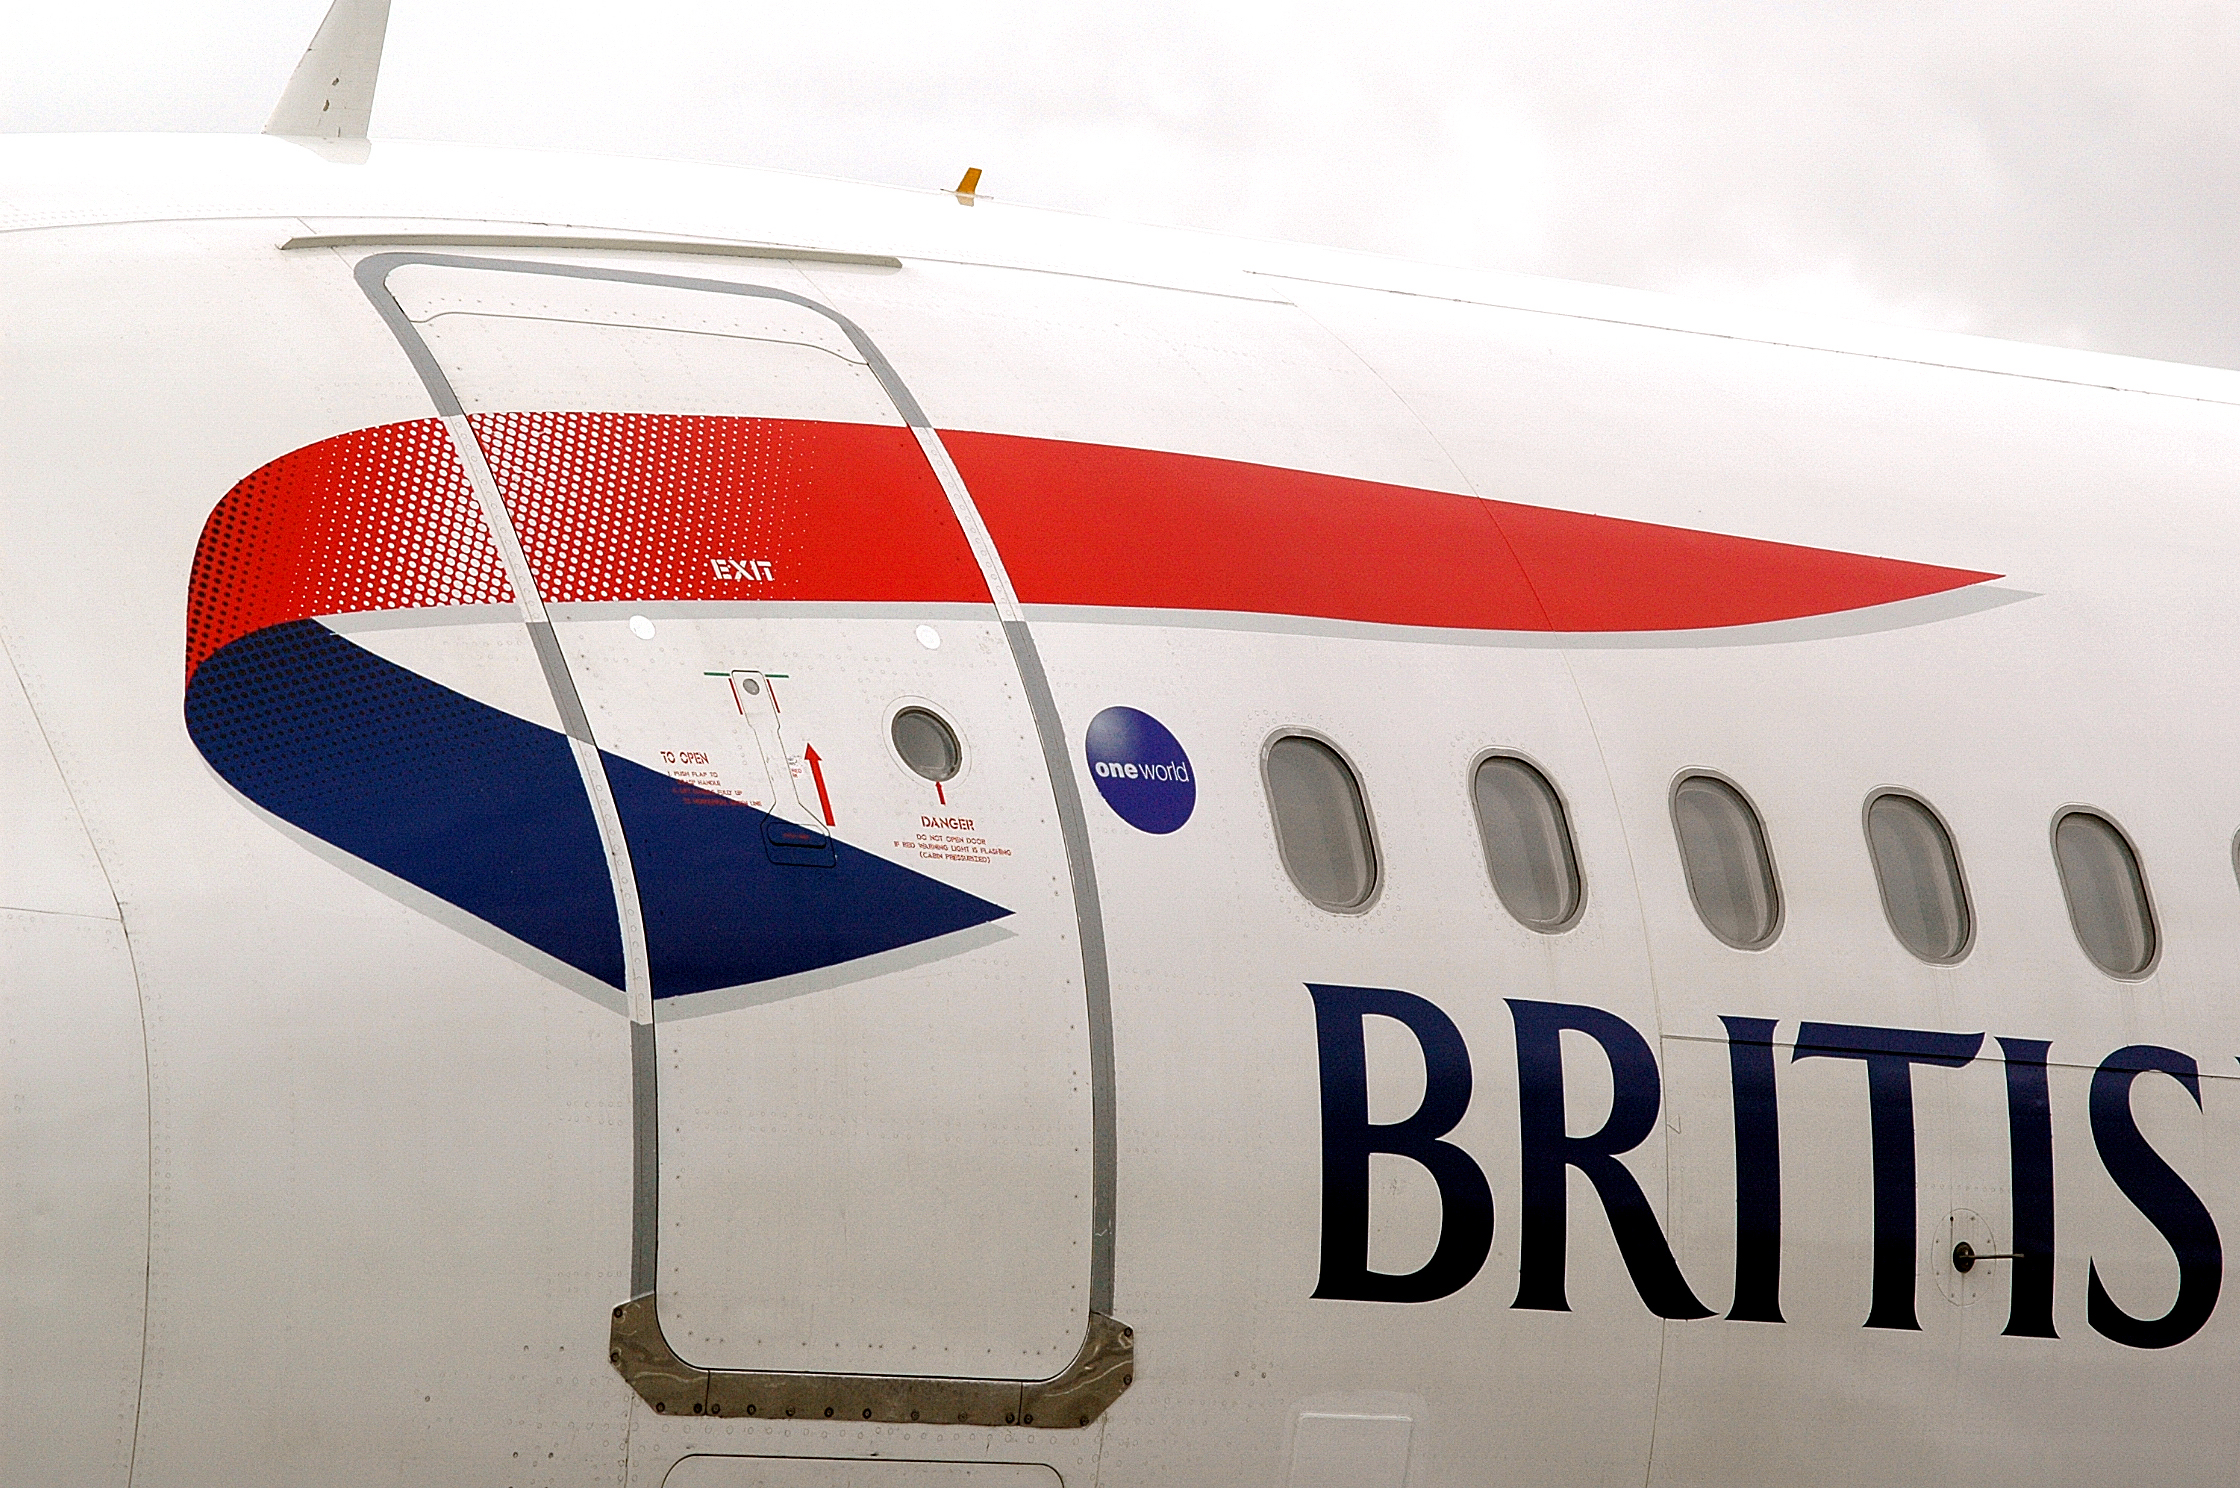 British Airways va se poser à Céphalonie (Grèce)